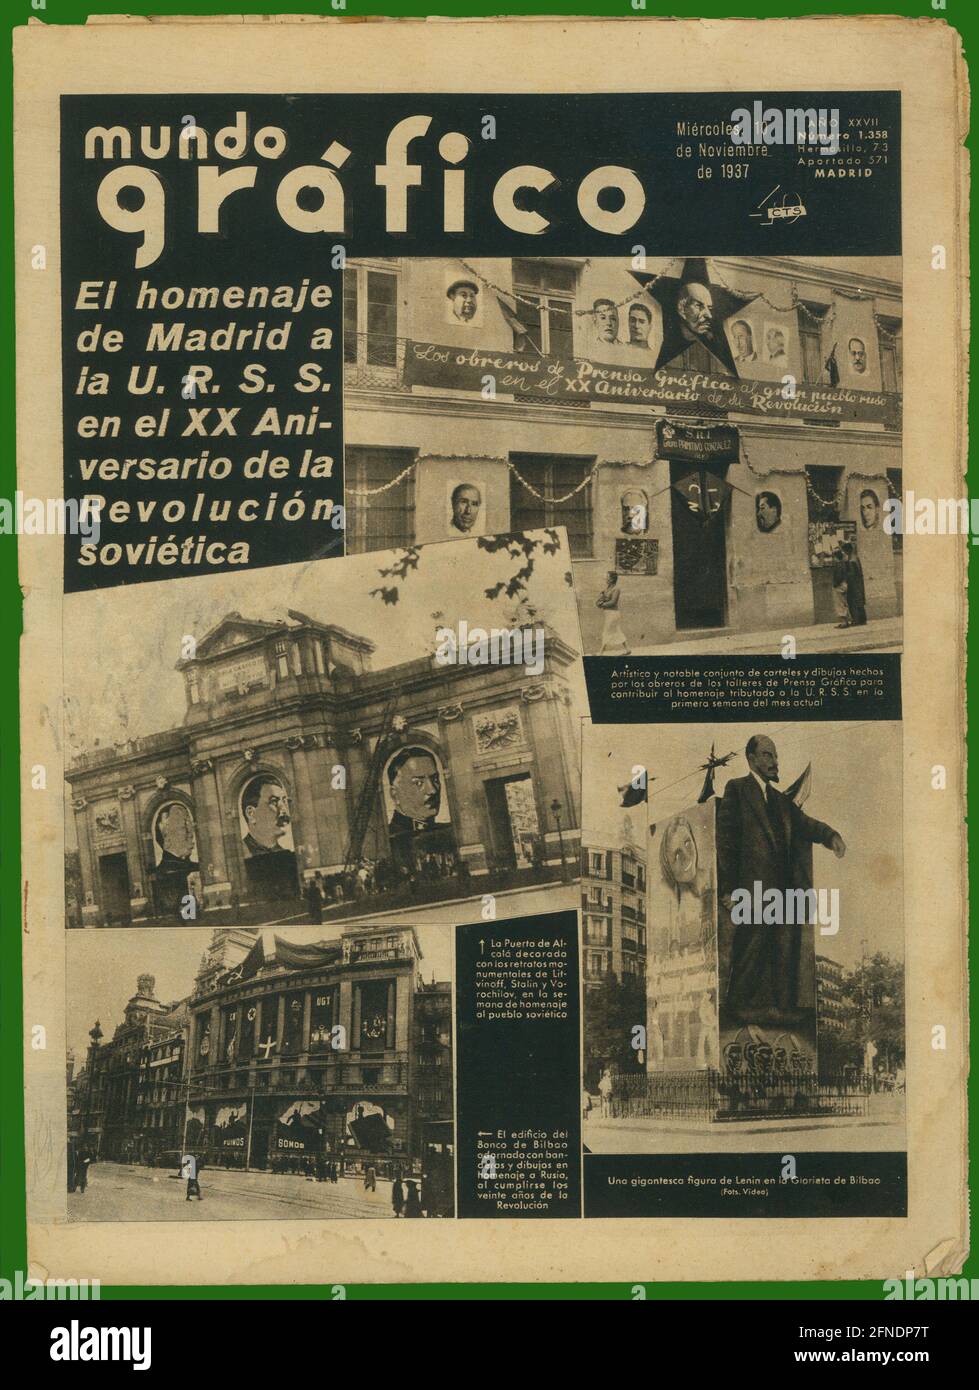 Guerra civil española (1936-1939). Portada de la revista Mundo Gráfico, editado en Madrid, noviembre de 1937. Stock Photo